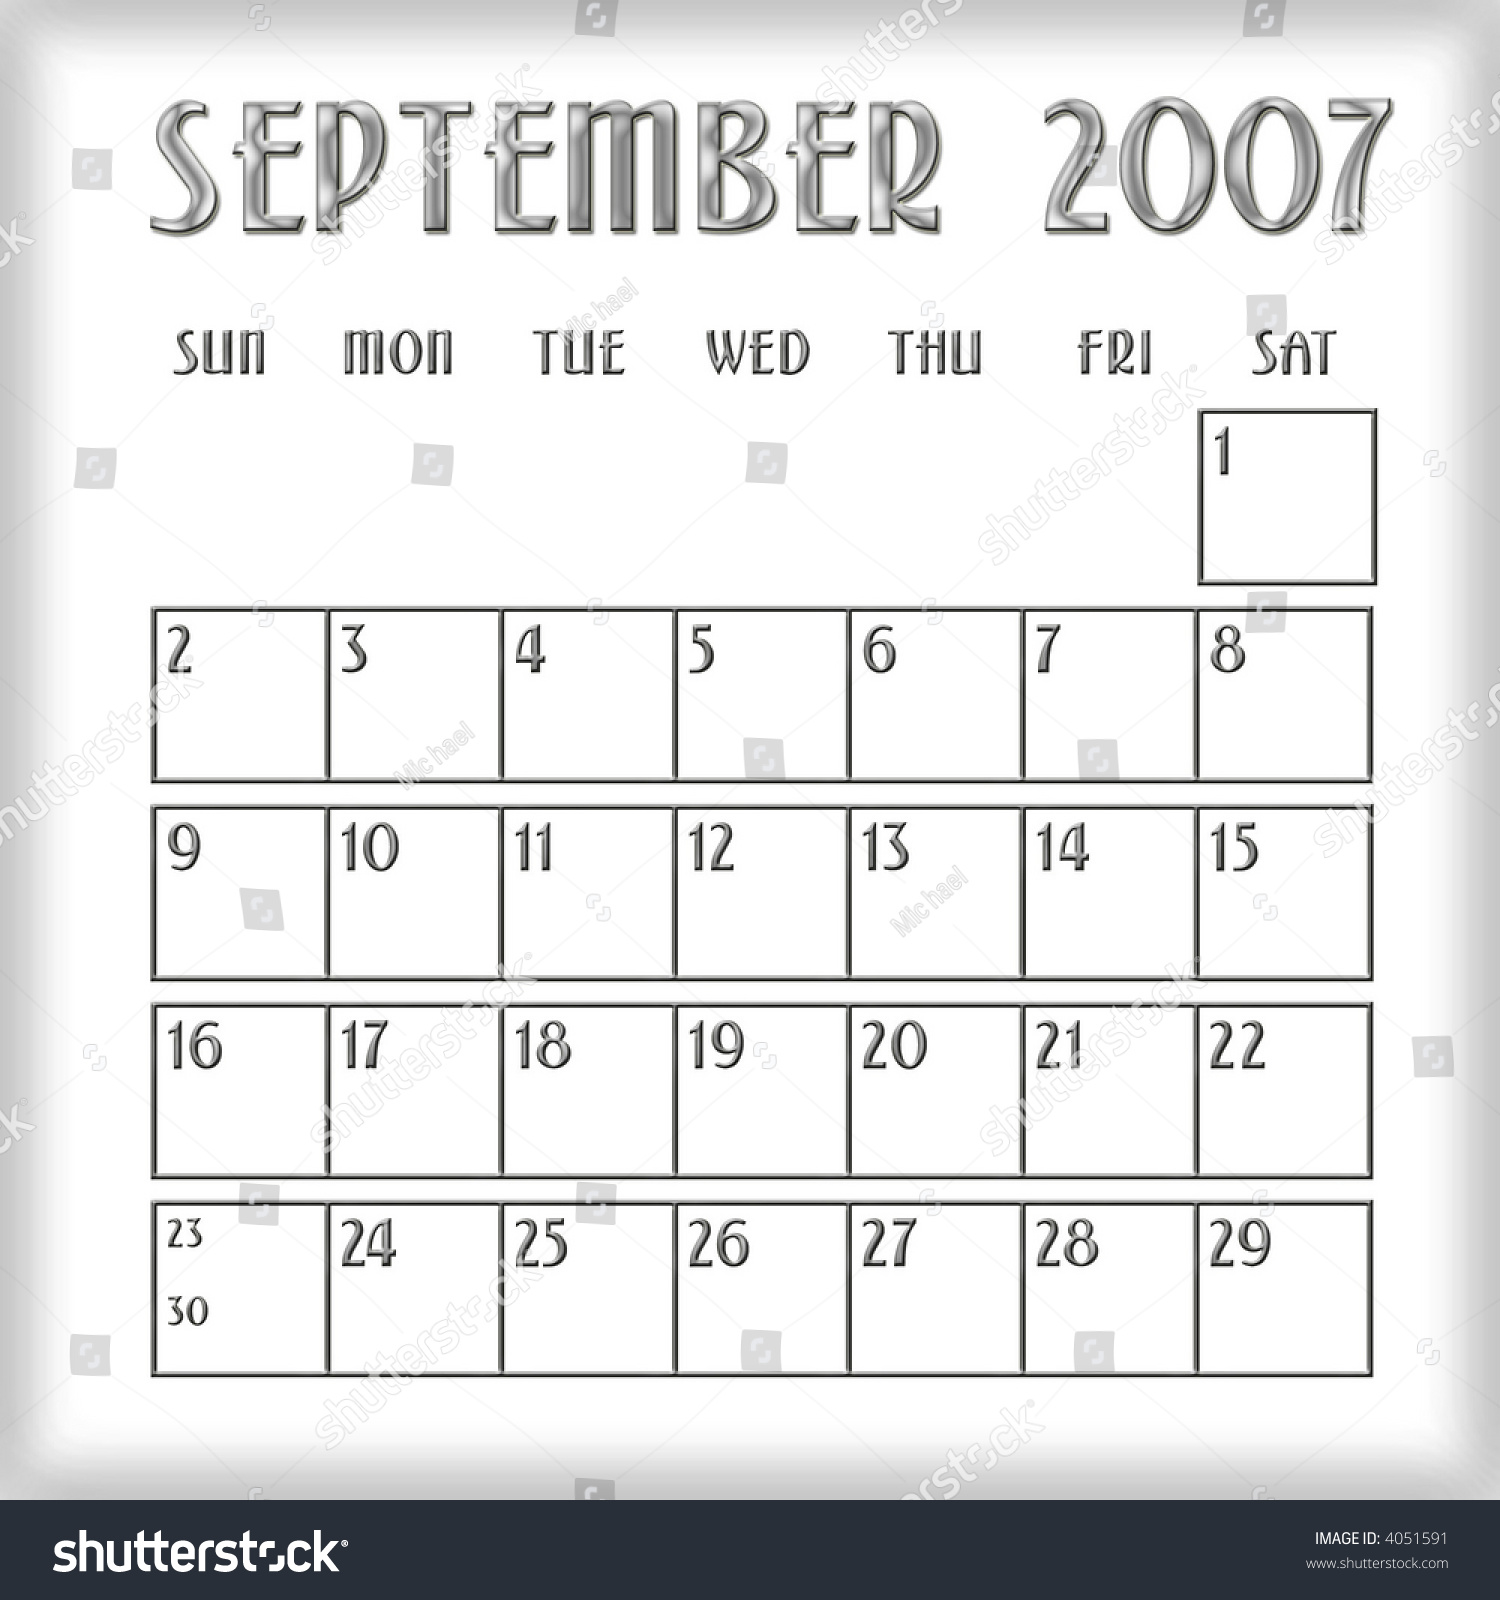 3d September 2007 Agenda Calendar Stock Photo 4051591 : Shutterstock